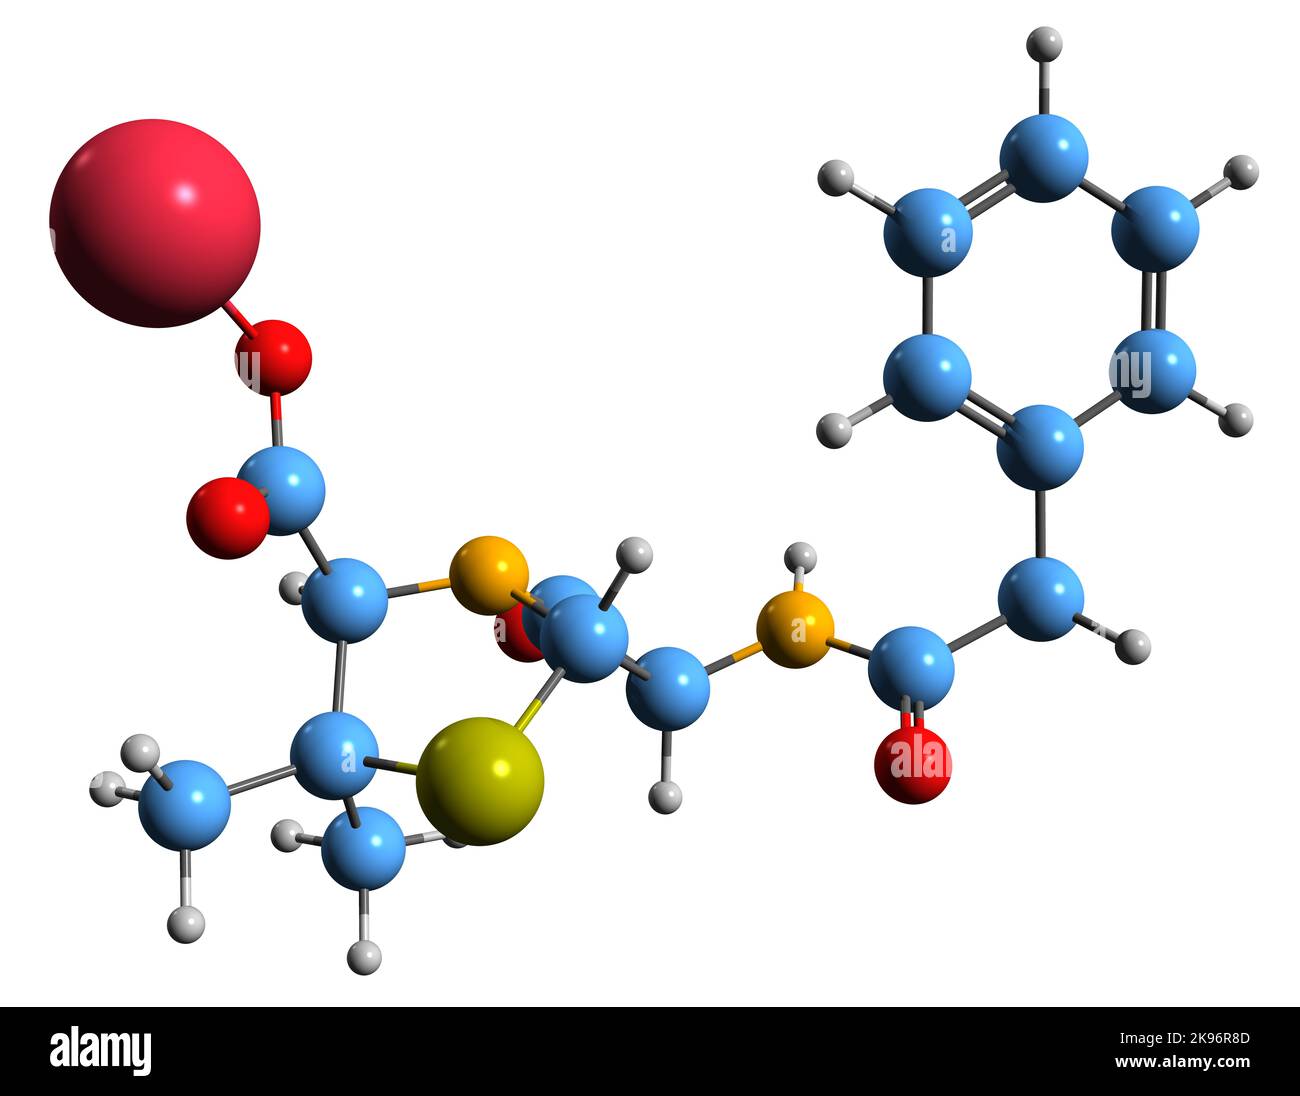 3D Bild der Skelettformel von Penicillin-G-Natrium - molekularchemische Struktur eines Antibiotikums, das auf weißem Hintergrund isoliert ist Stockfoto